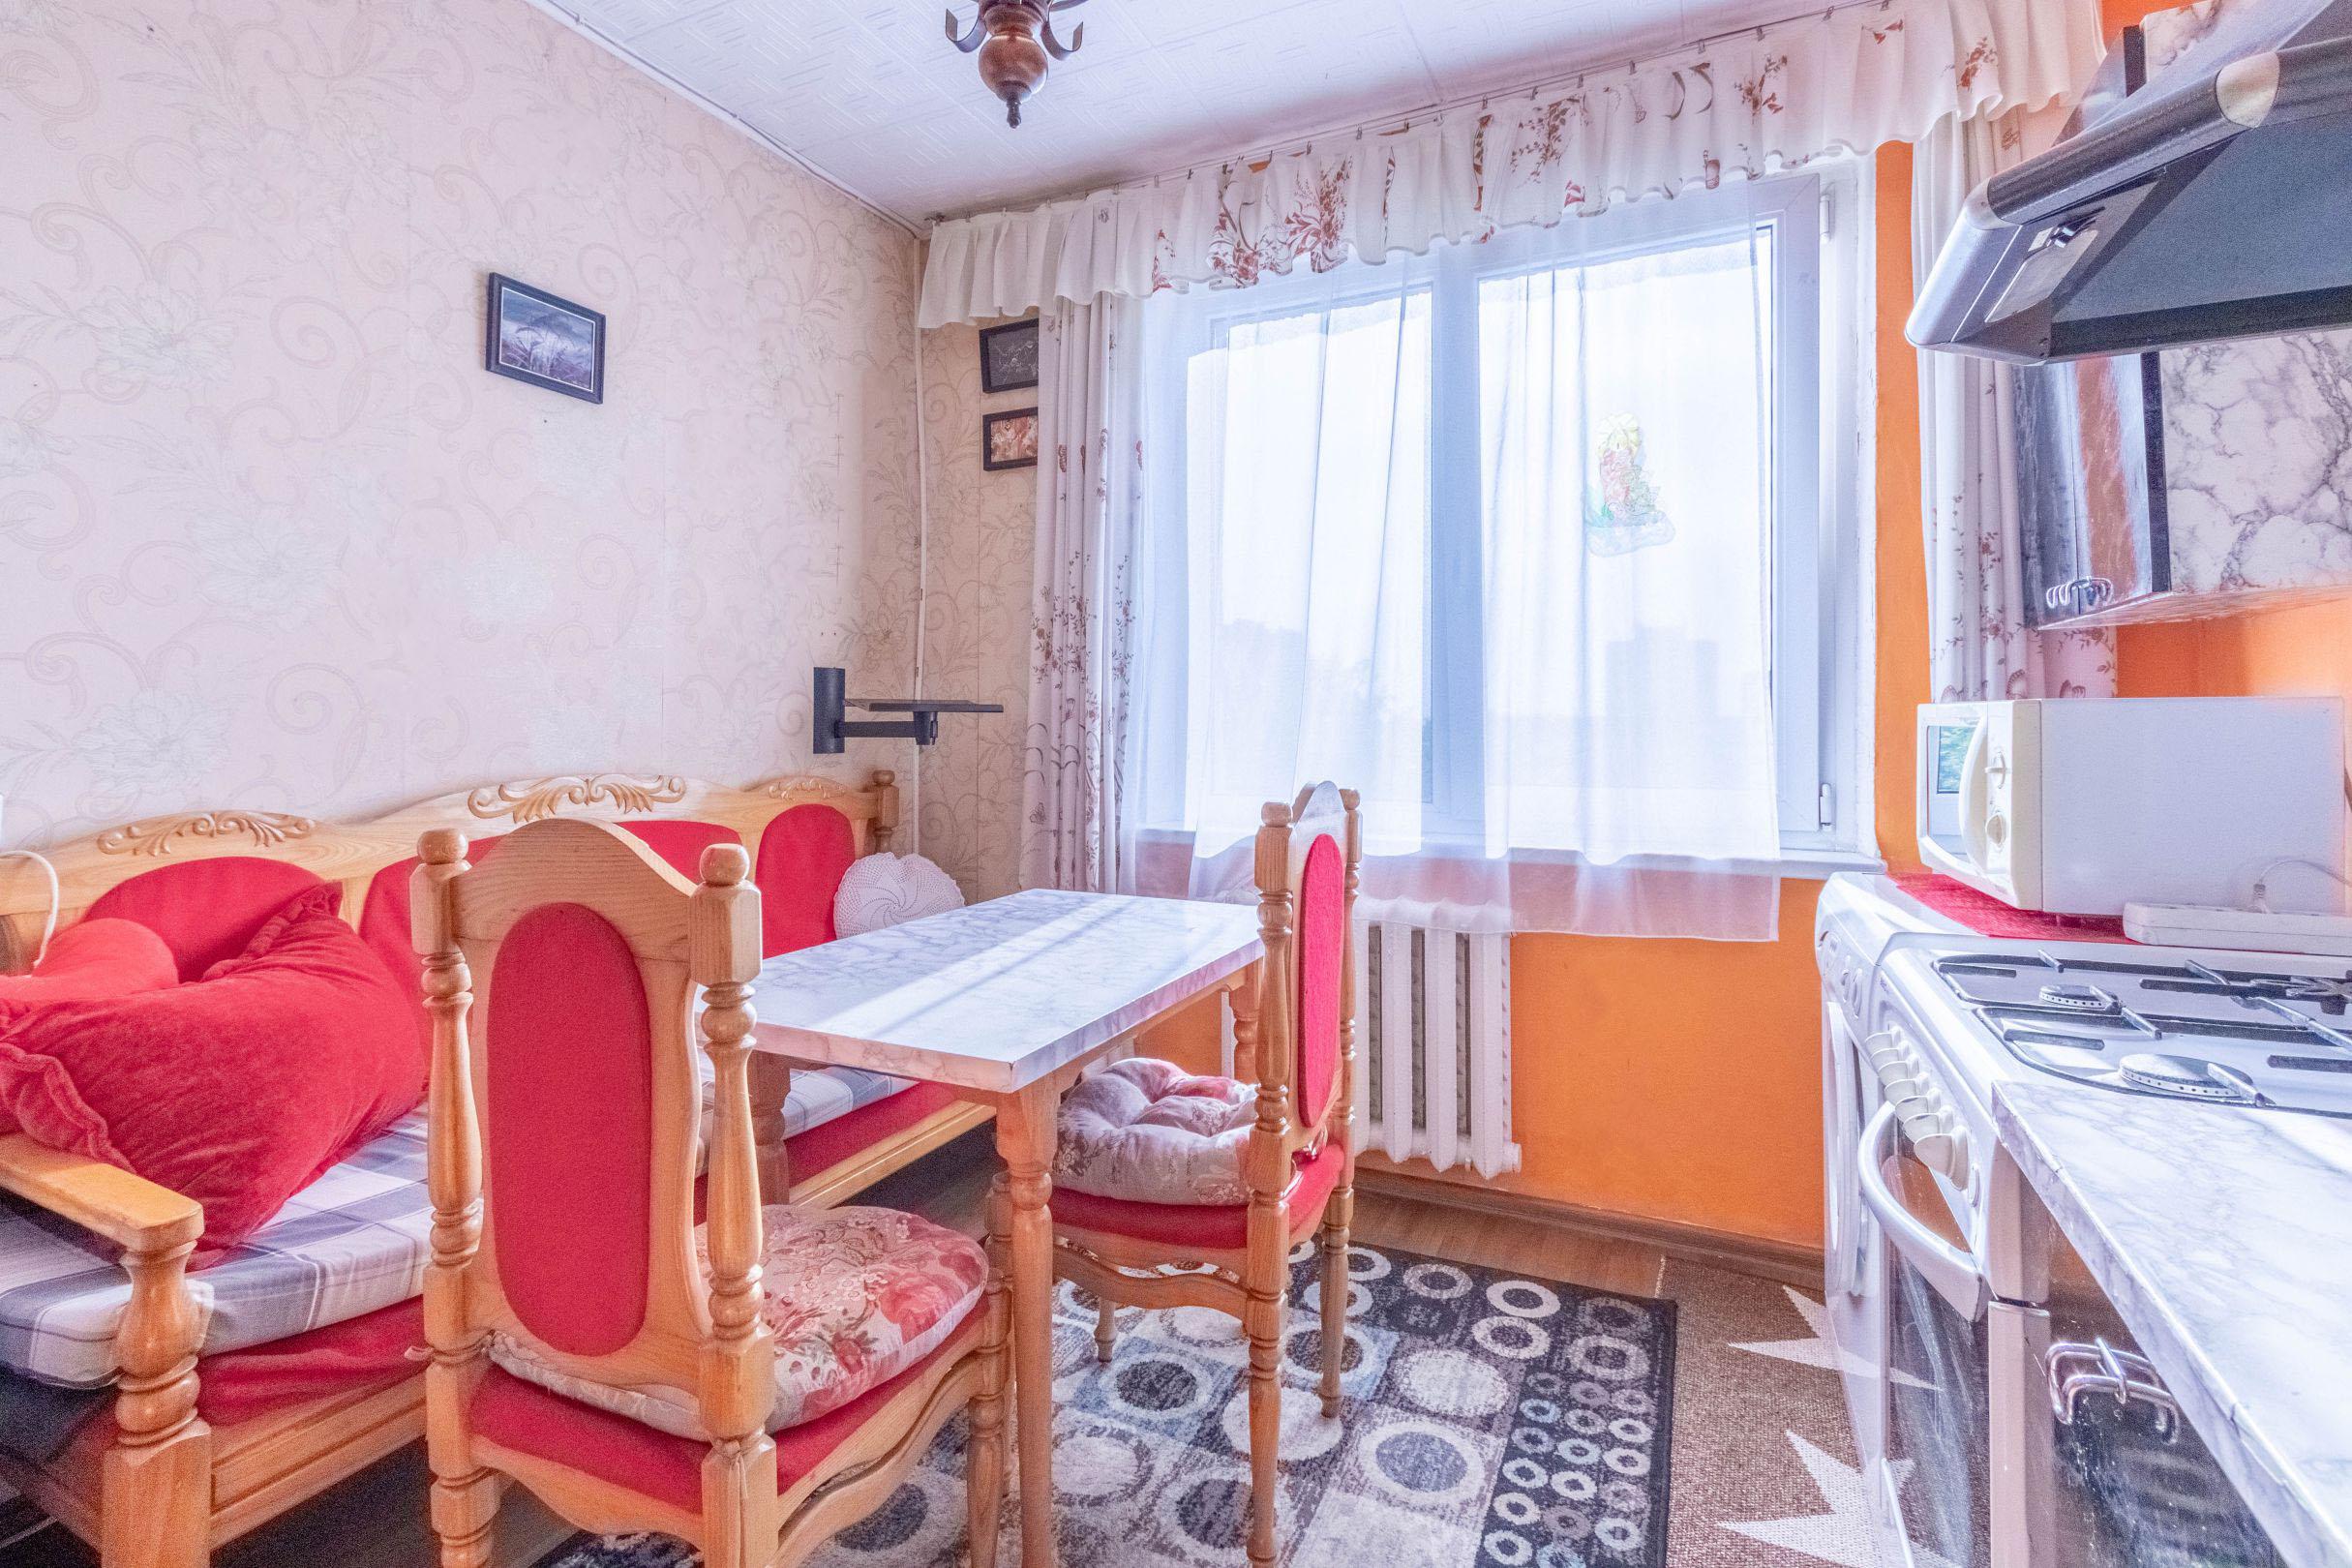 Parduodamas tvarkingas 3-jų kambarių butas Kniaudiškių g. 49, Panevėžyje